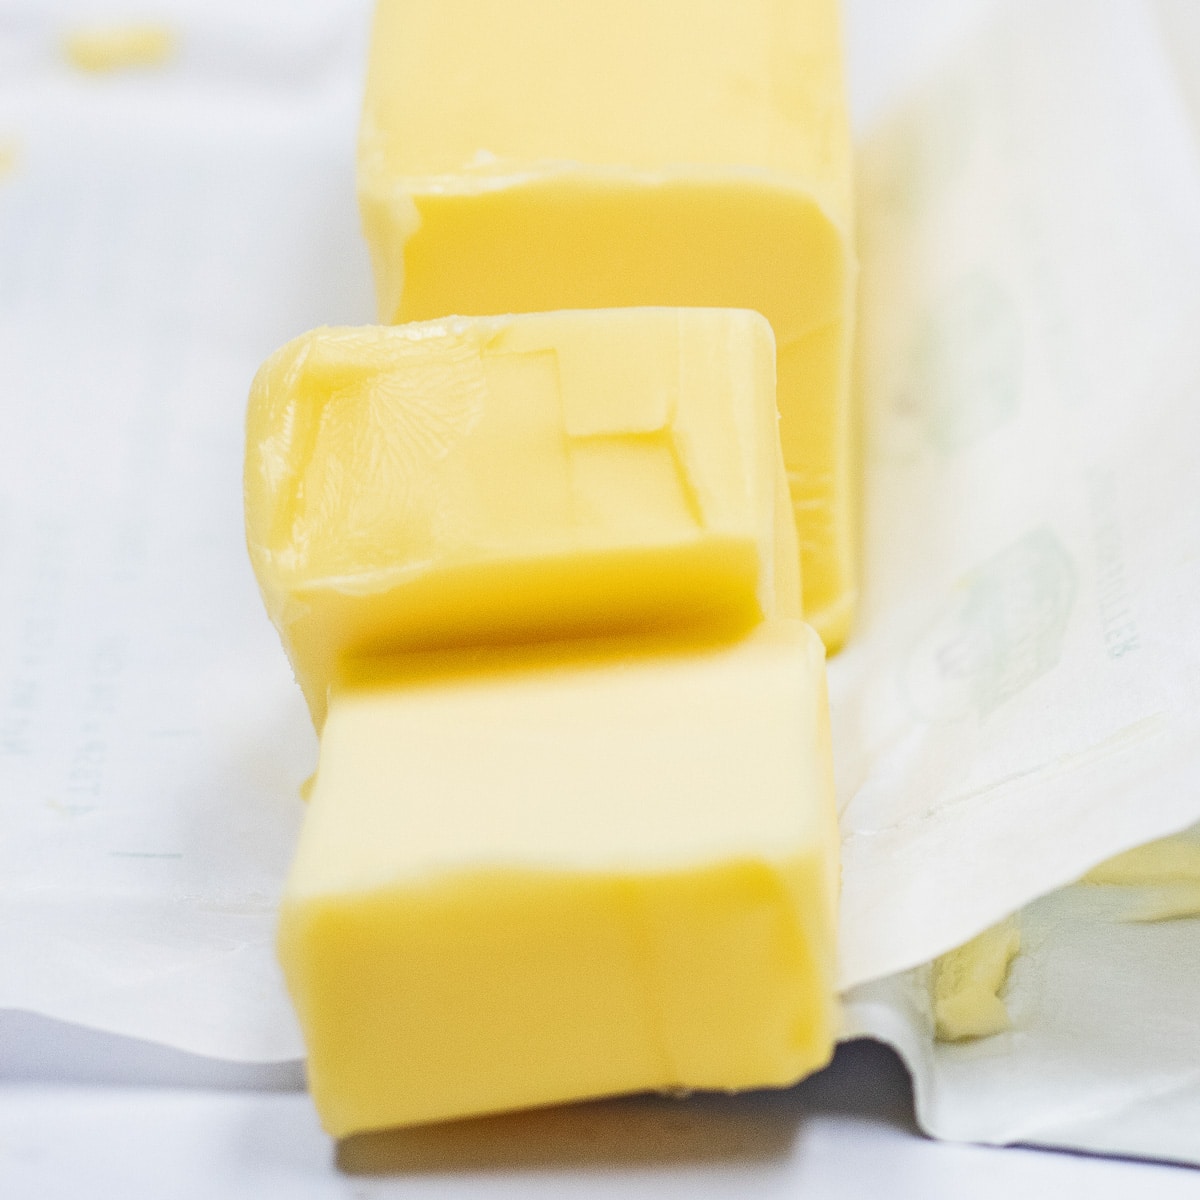 यहां दिखाए गए कटा हुआ यूरोपीय मक्खन को बदलने के लिए सर्वश्रेष्ठ मक्खन विकल्प विकल्प।